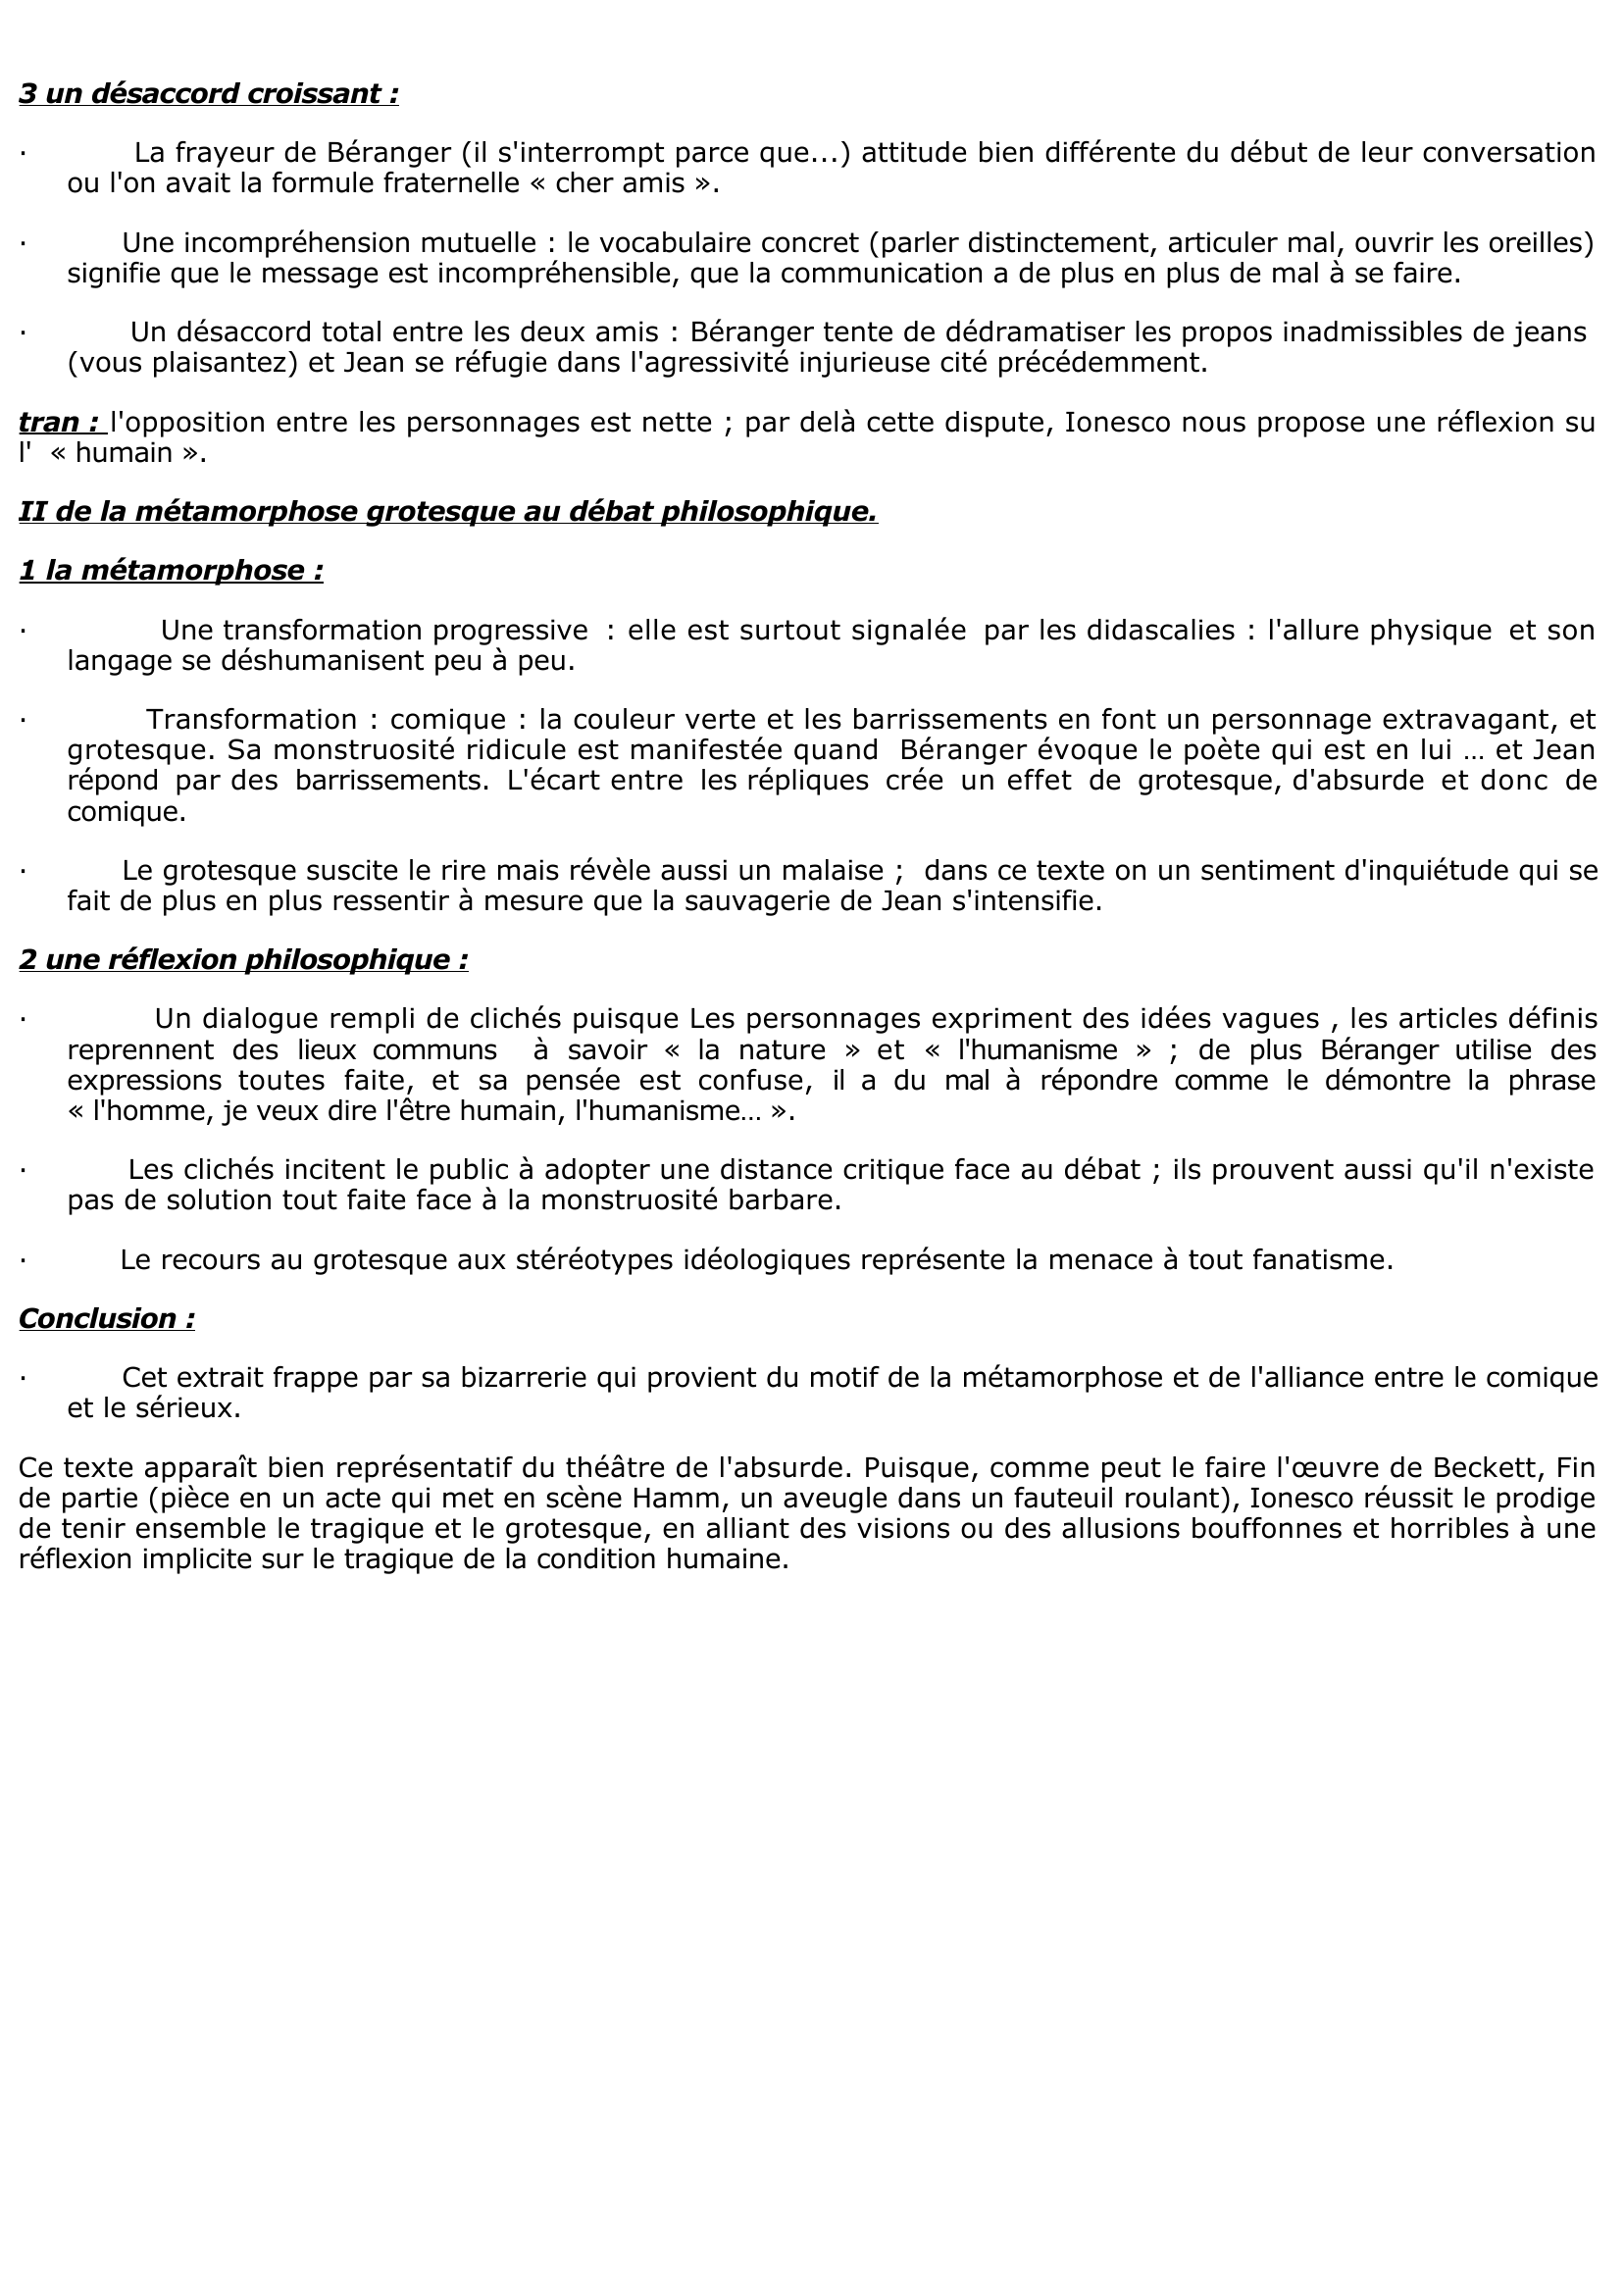 Prévisualisation du document Fiche BAC Rhinocéros texte 2 - Ionesco